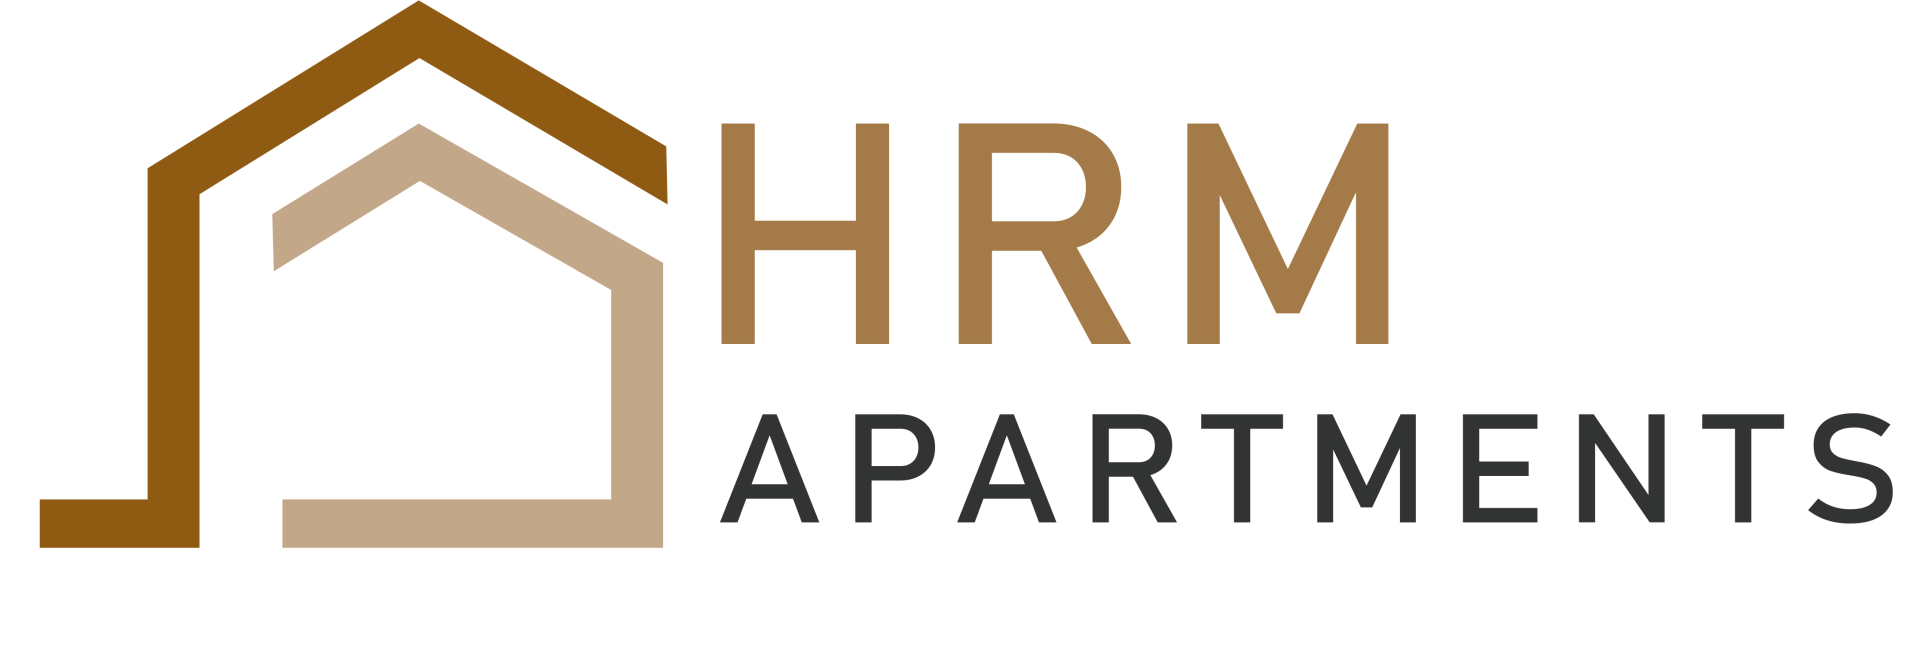 Homel Realty & Management Logo